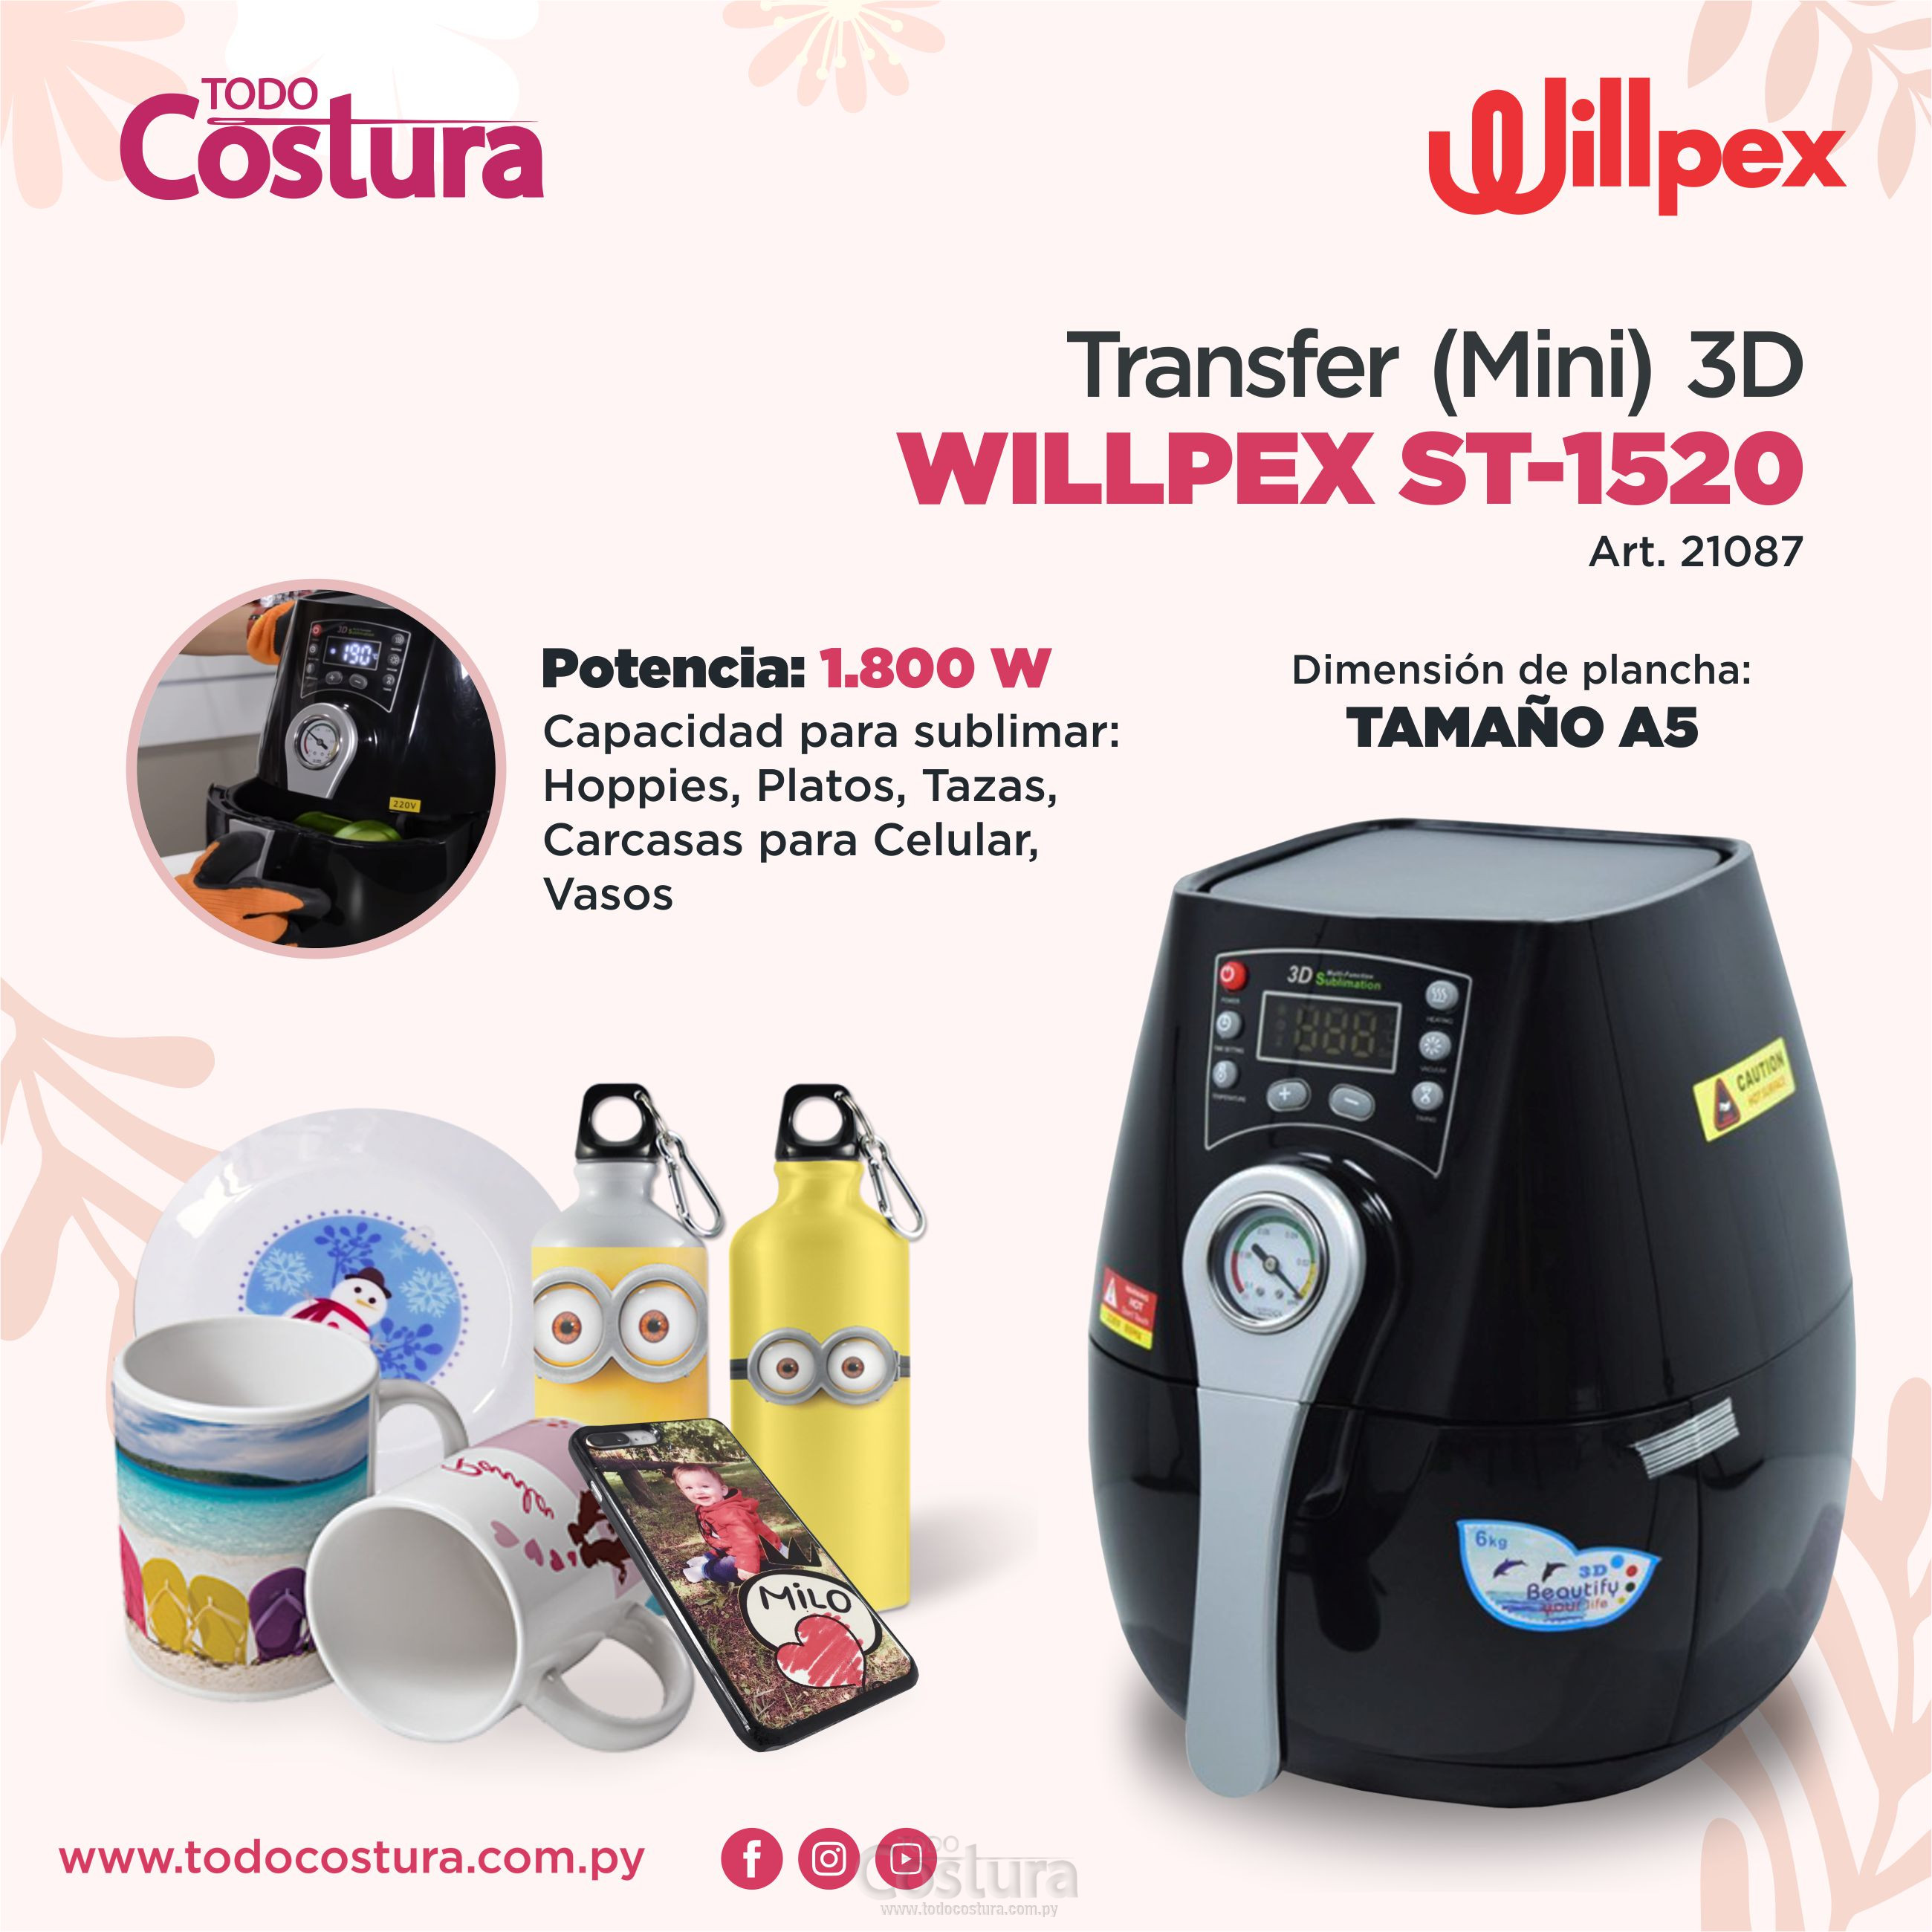 TRANSFER (MINI 3D) WILLPEX ST-1520